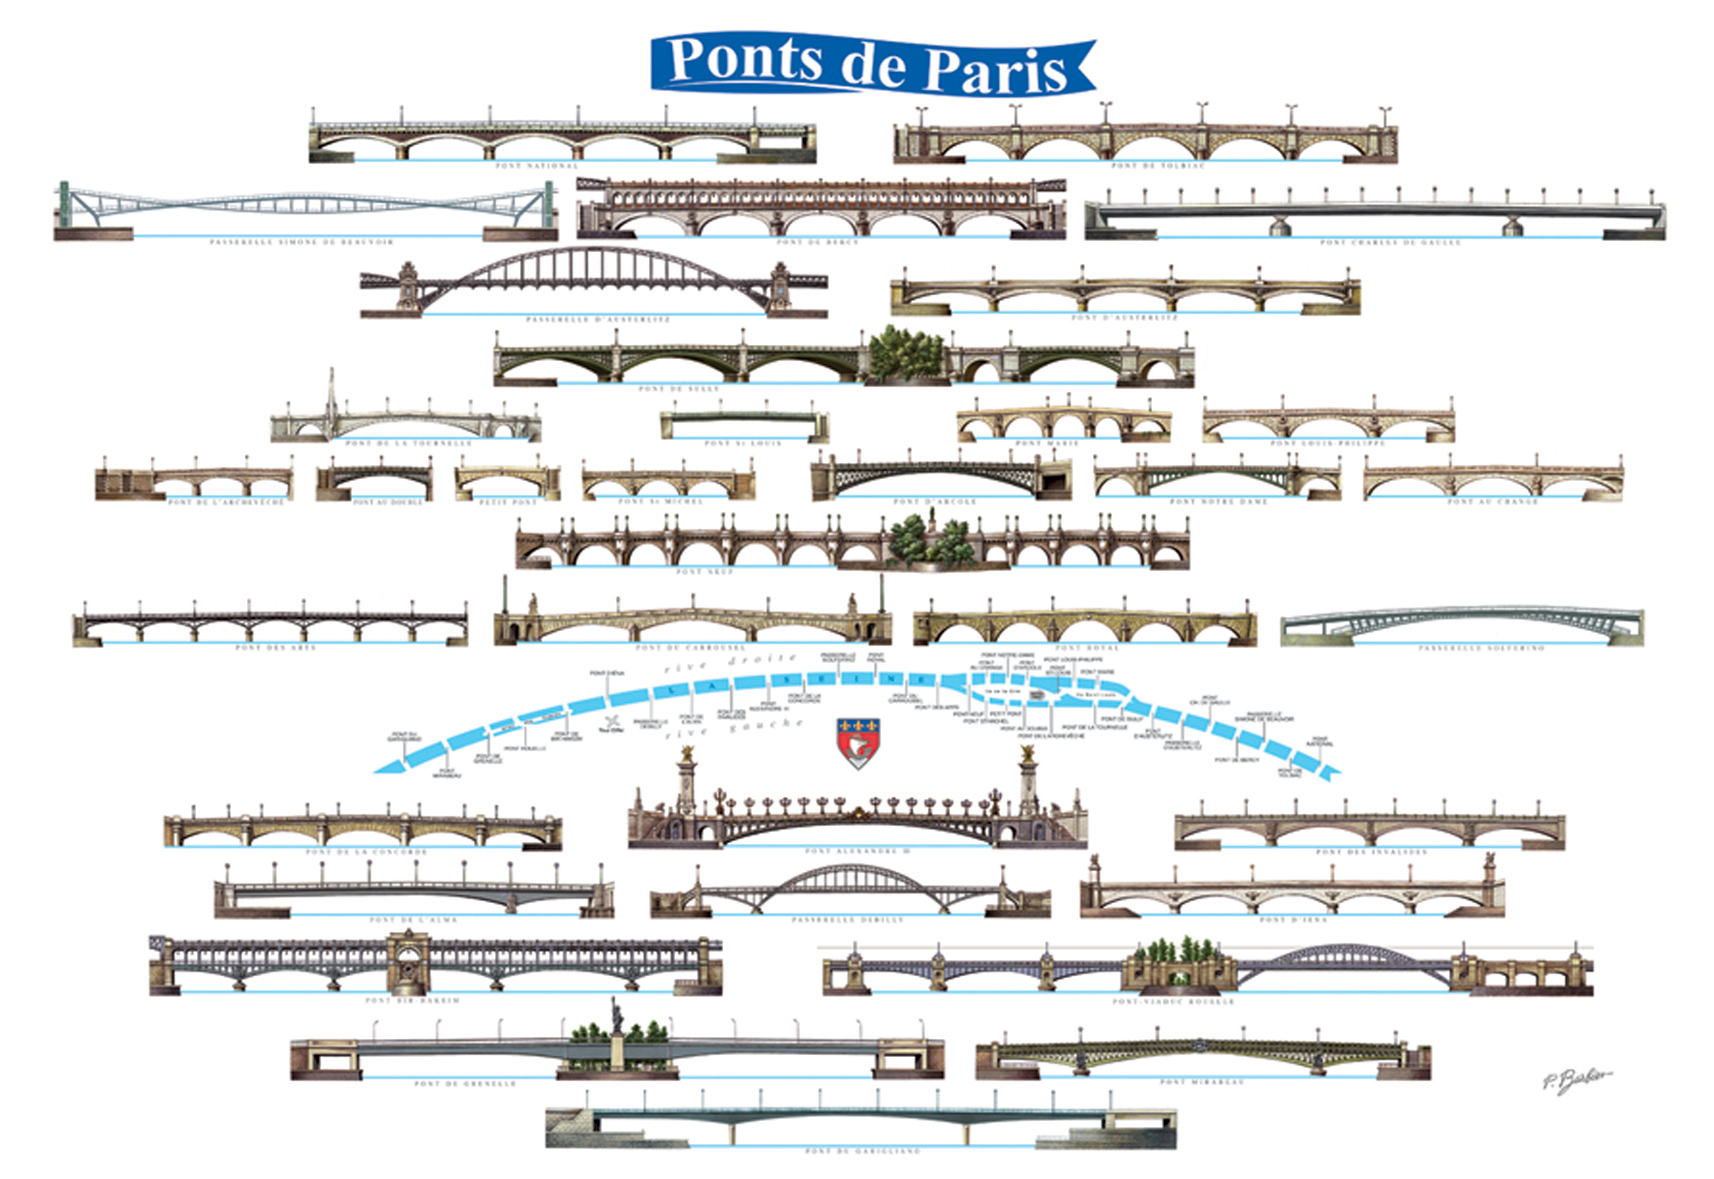 Affiche Ponts de Paris  50x70cm  29,70€  quadri recto 300g